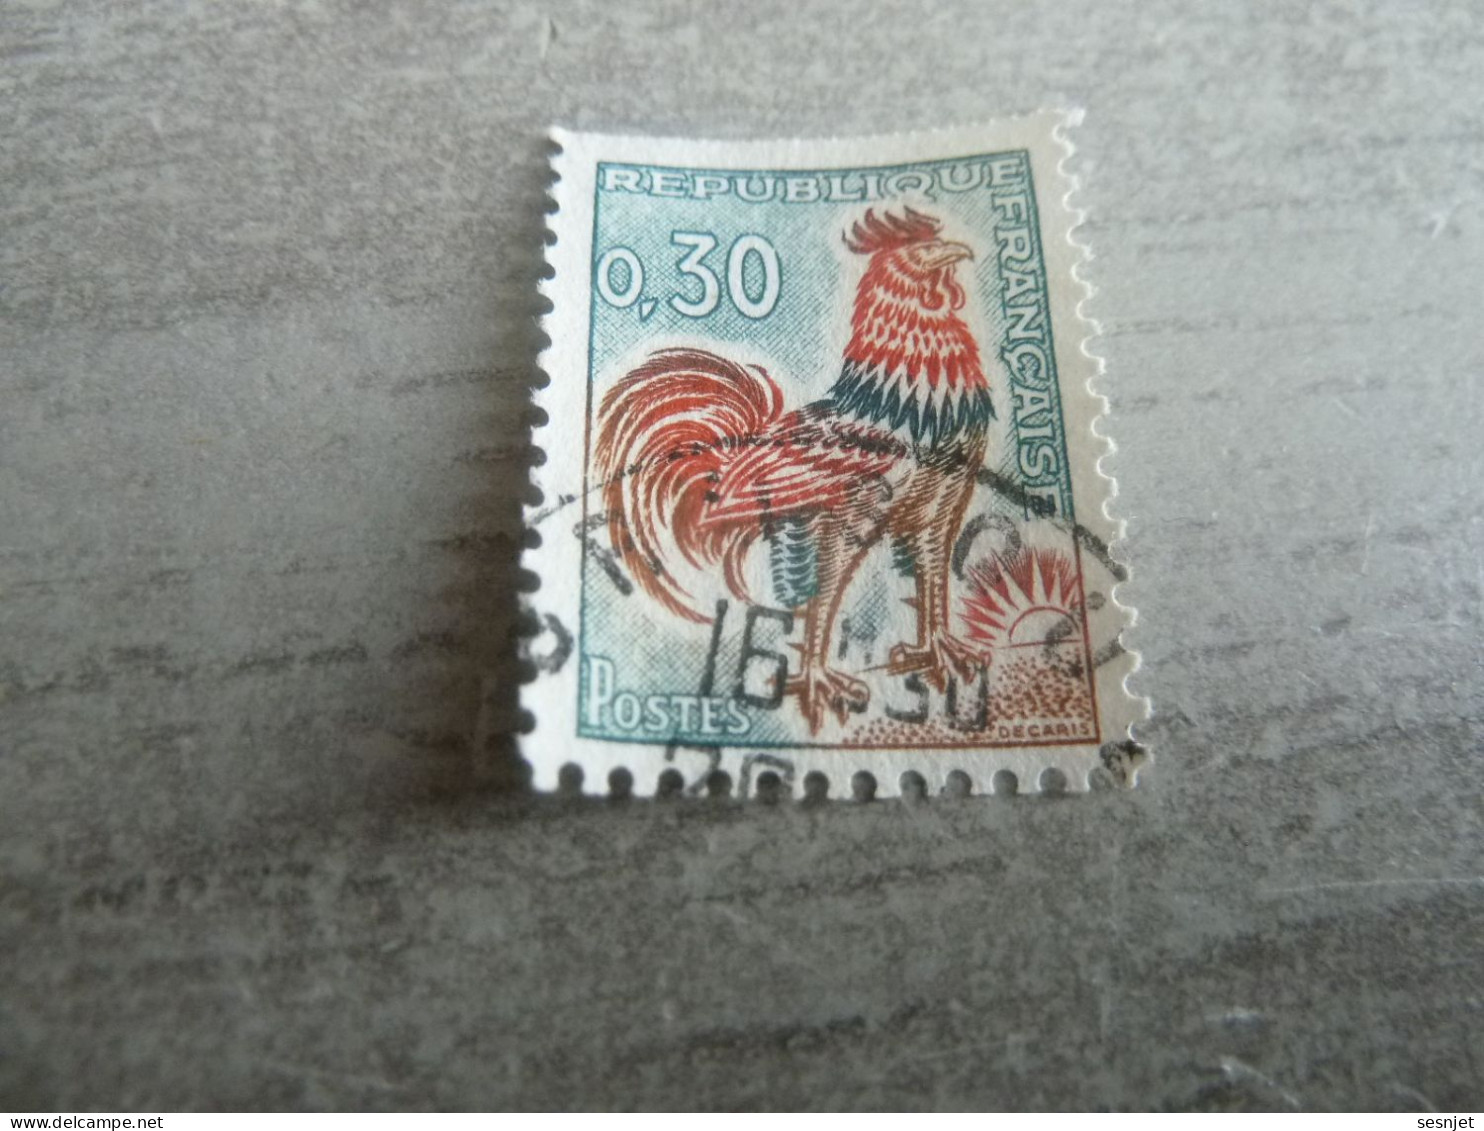 Type Coq De Decaris - 30c. - Yt 1331 A - Vert, Rouge Et Bistre - Oblitéré - Année 1964 - - 1962-1965 Cock Of Decaris